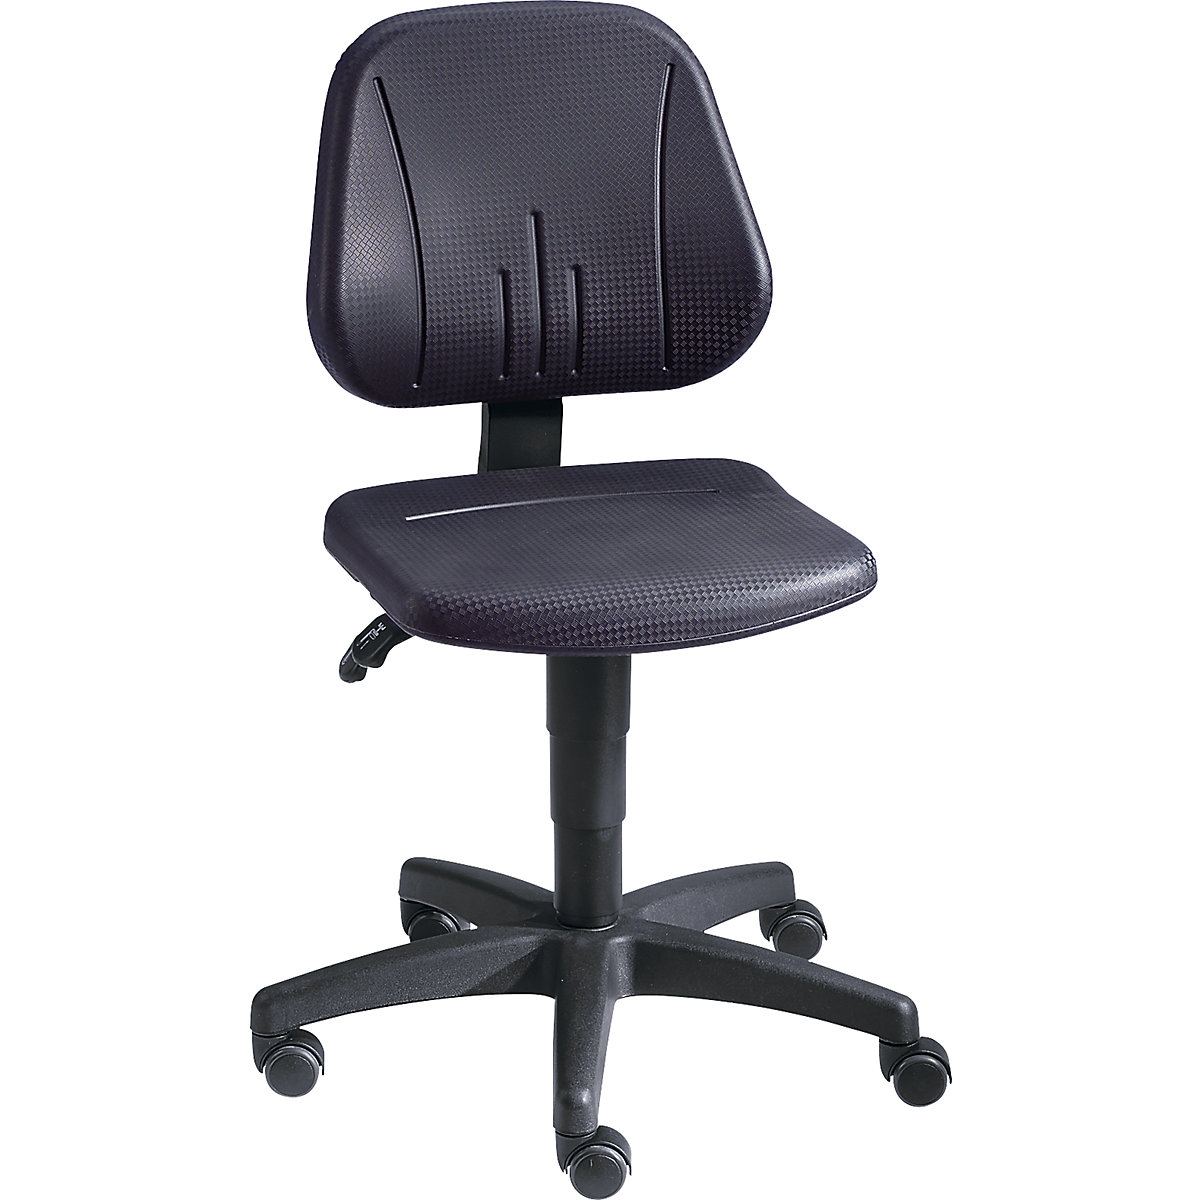 Pracovní otočná židle – bimos, s přestavováním výšky plynovým pístem, PU pěna, černá barva, s kolečky-12